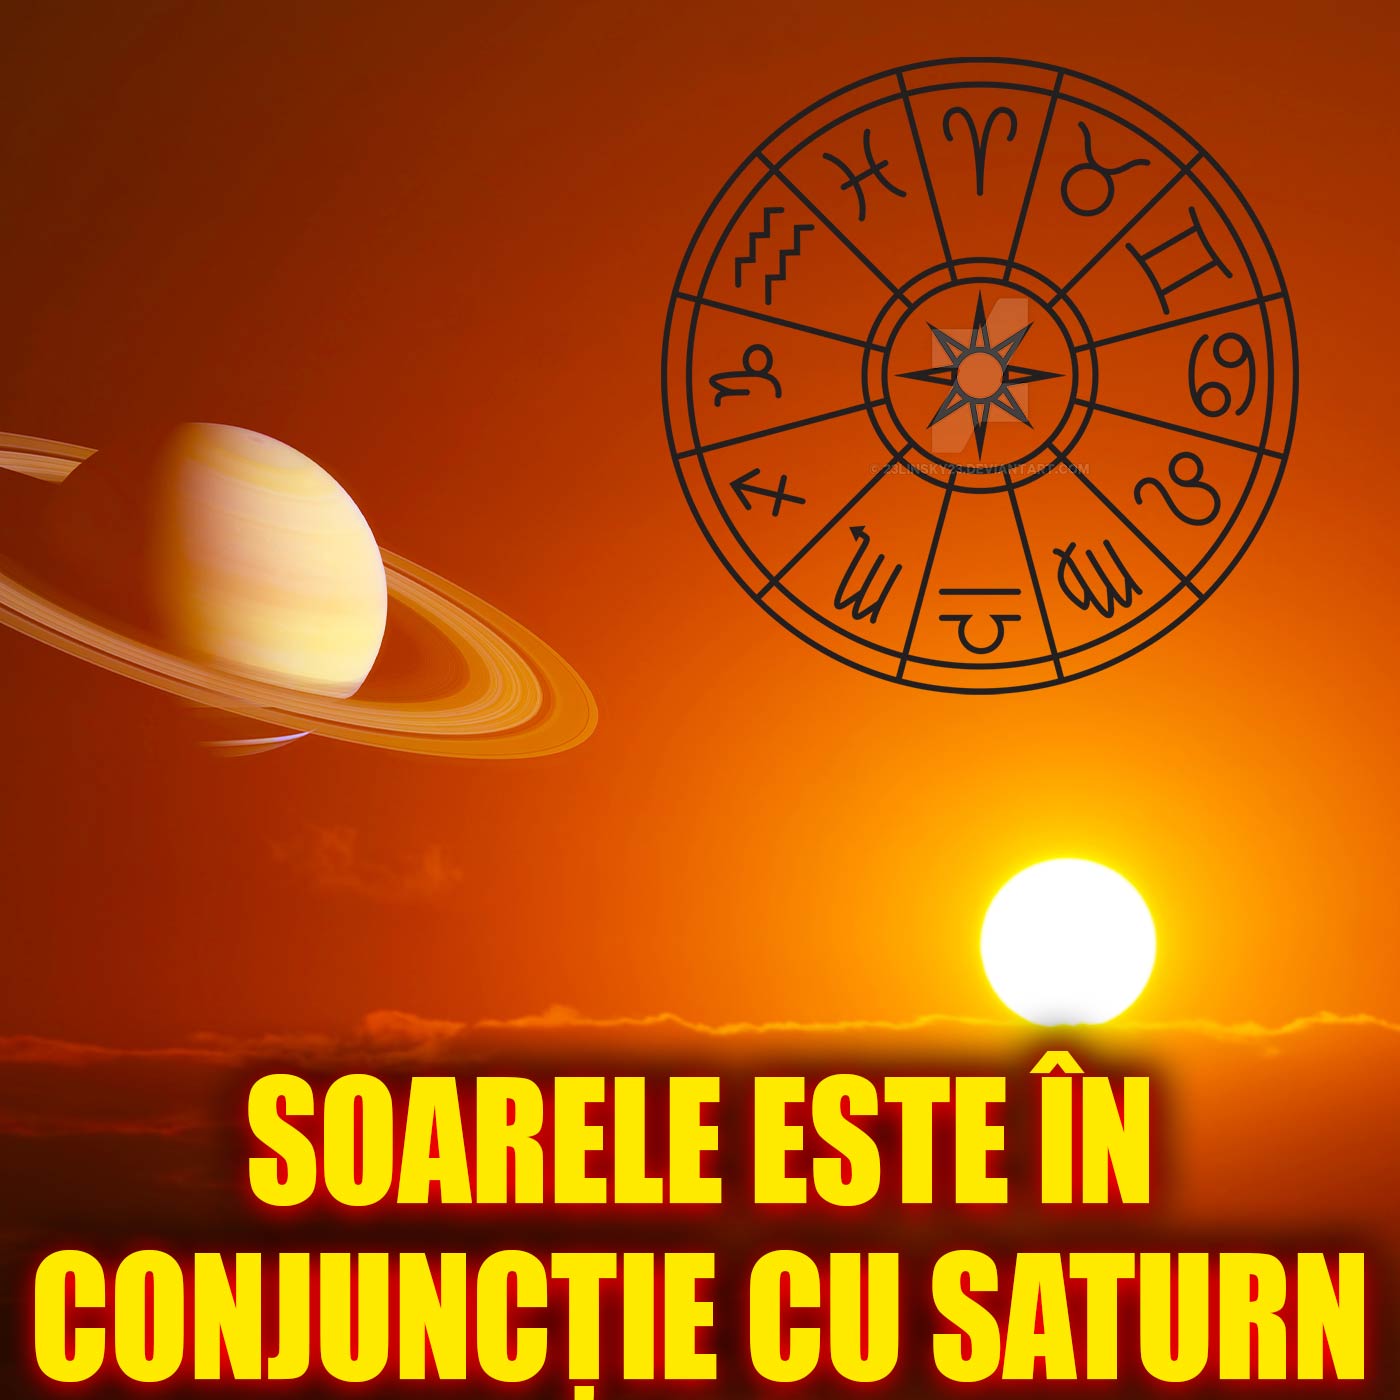 16 februarie este ziua in care Soarele este in conjunctie cu Saturn. 3 zodii sunt influentate foarte tare de acest fenomen